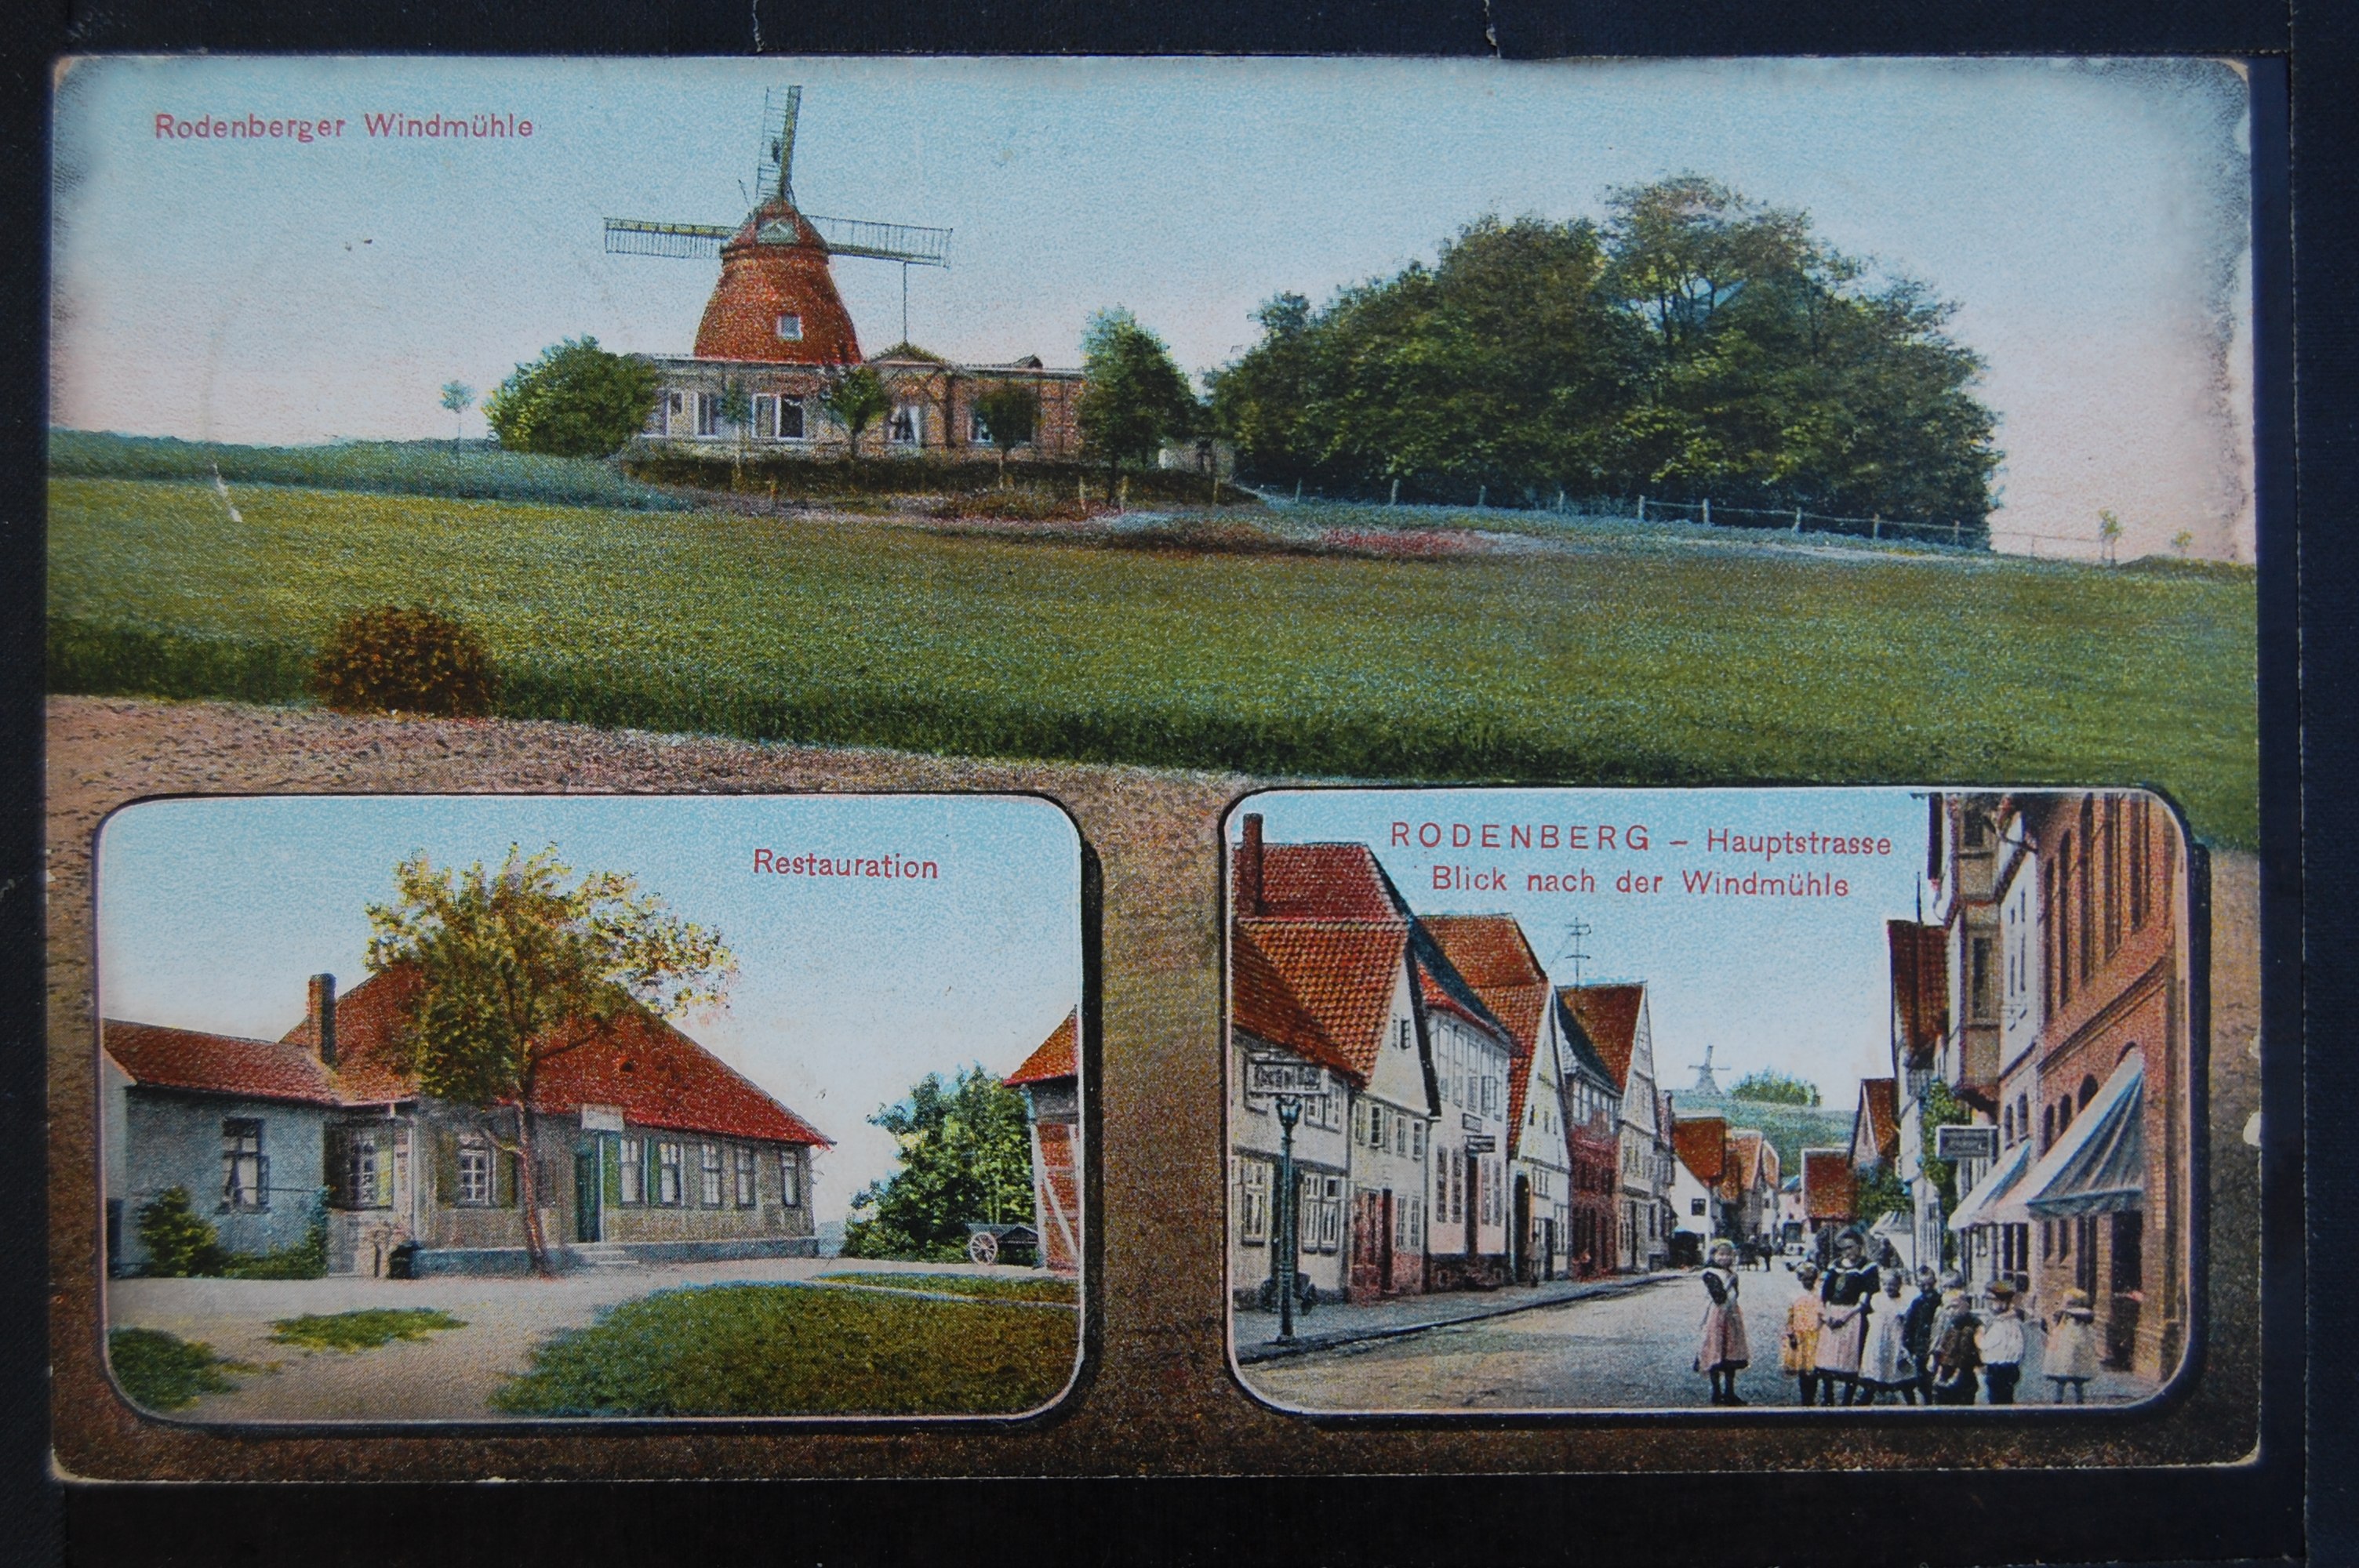 AK Rodenberg, Rodenberger Windmühle, Restauration, Haupstraße, Koloriert, Datum nur teilweise vorhanden (03. Juli) (Museumslandschaft Amt Rodenberg e.V. CC BY-NC-SA)